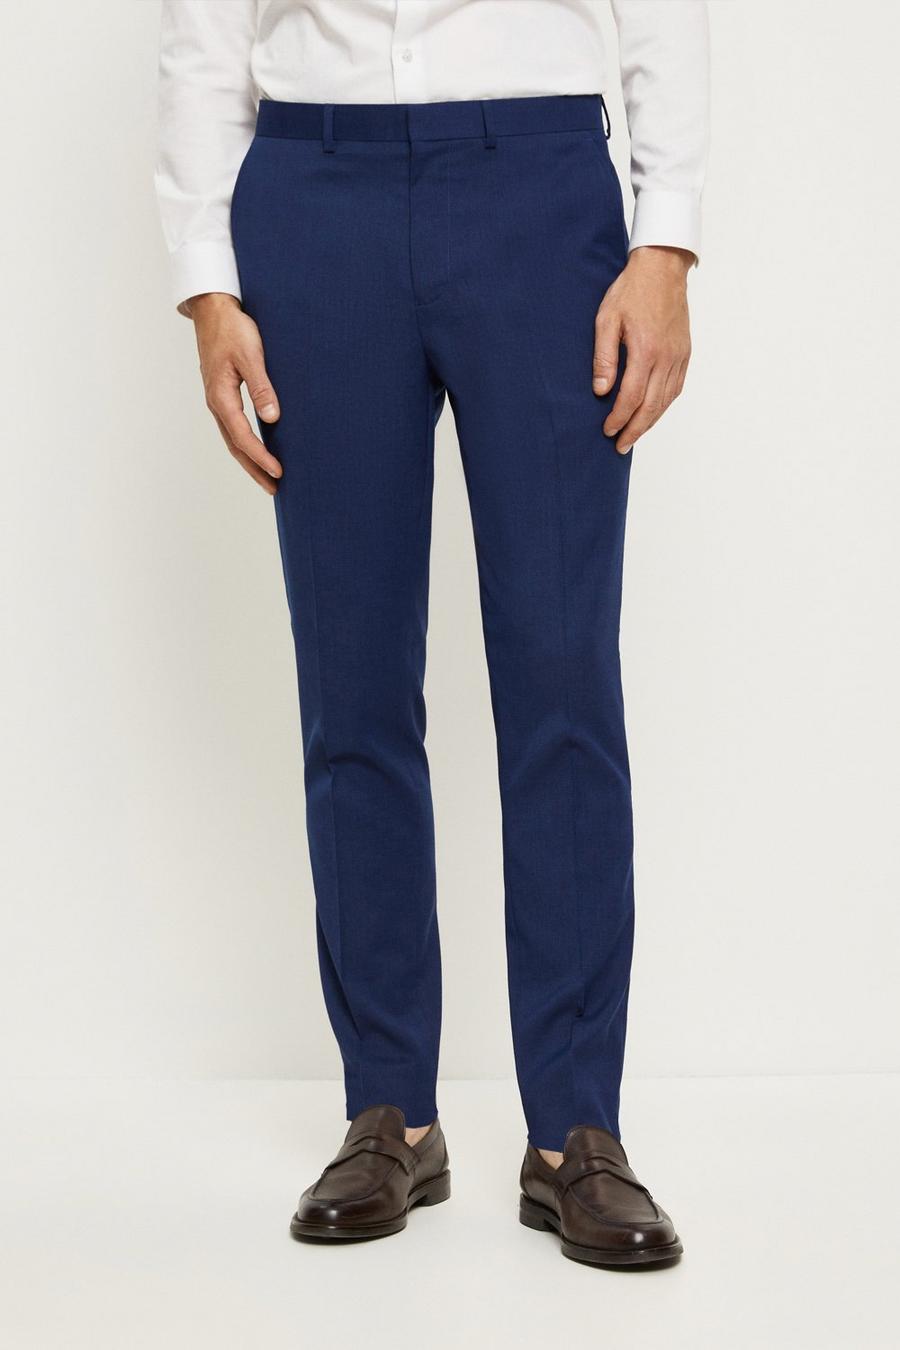 Suit Trousers | Suit Trousers For Men | Burton UK